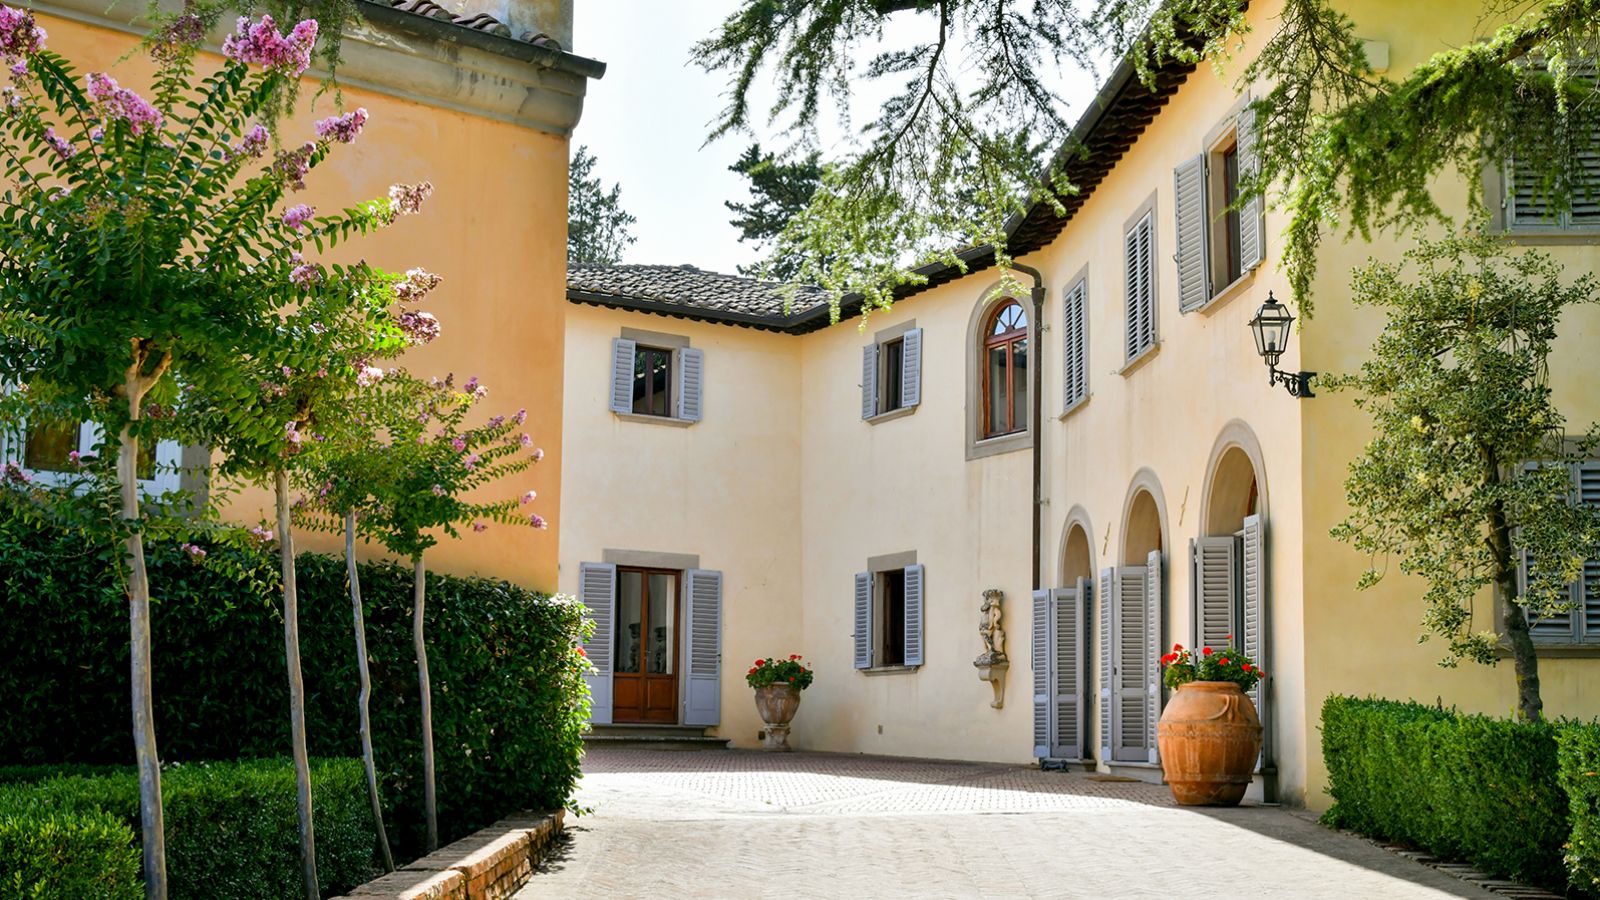 Driveway at Villa di Renai in Tuscany